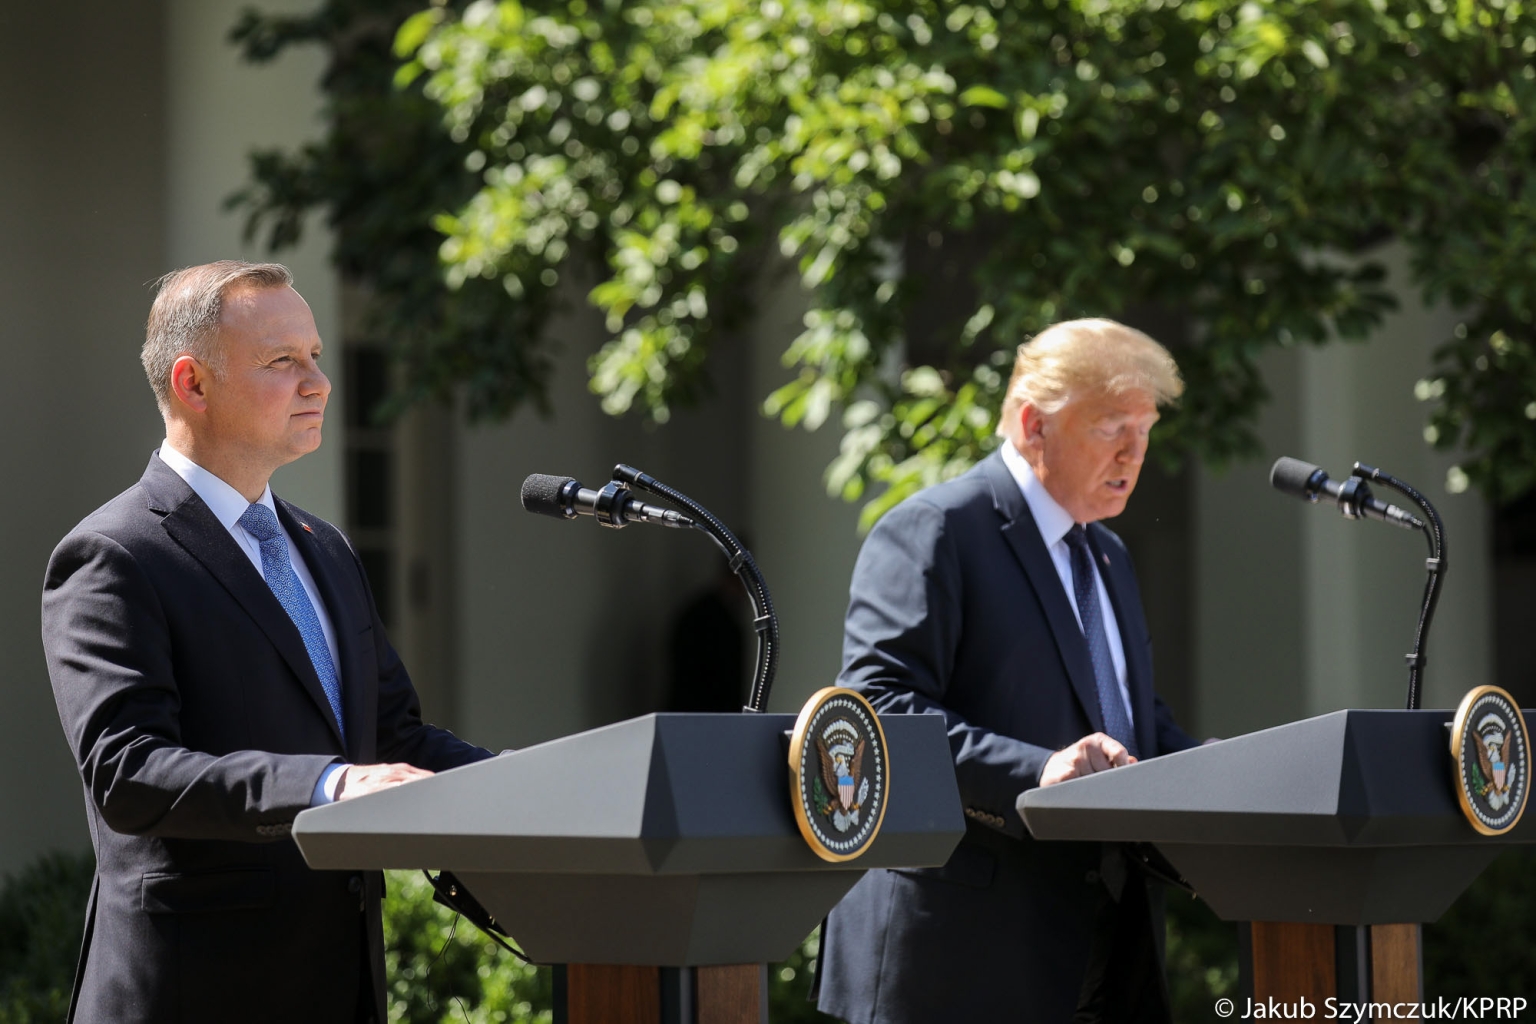 Andrjez Duda et Donald Trump présentent les résultats de leur entretien sur les projets nucléaires polonais en juin 2020, à Washington.